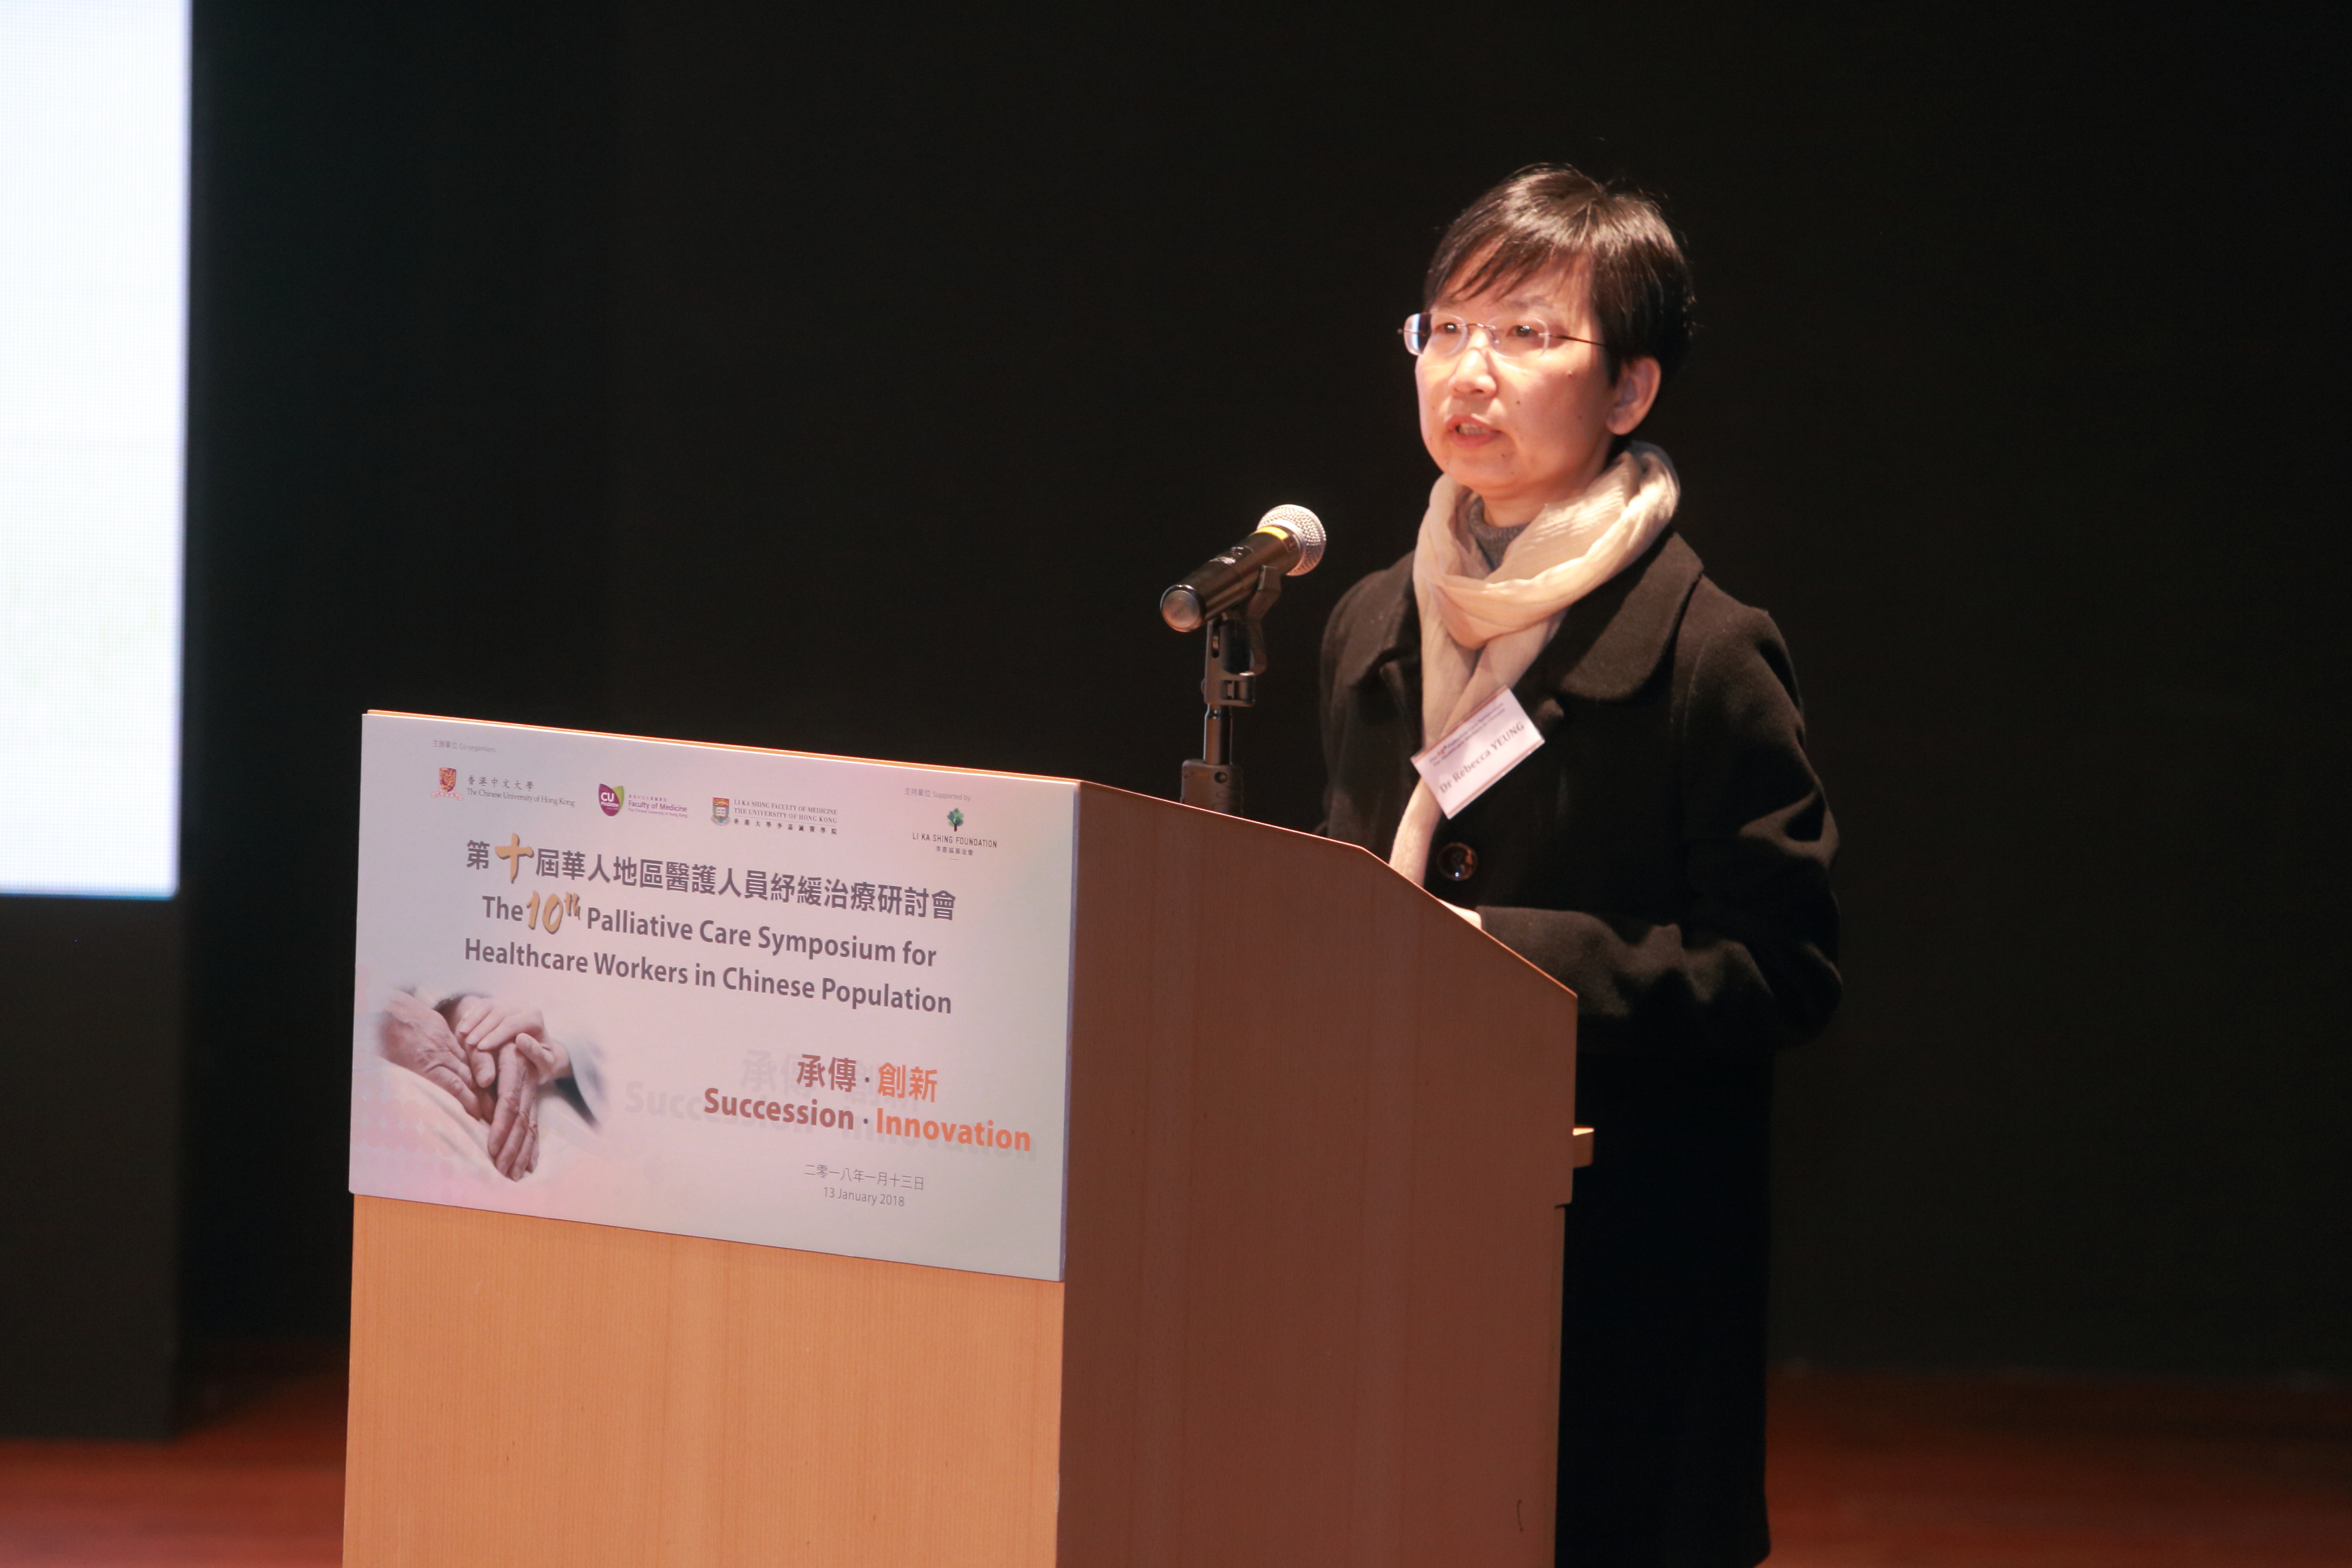 東區尤德夫人那打素醫院臨床腫瘤科部門主管楊美雲醫生發表專題演講，分享如何透過融合抗癌與紓緩治療，為病人帶來益處。